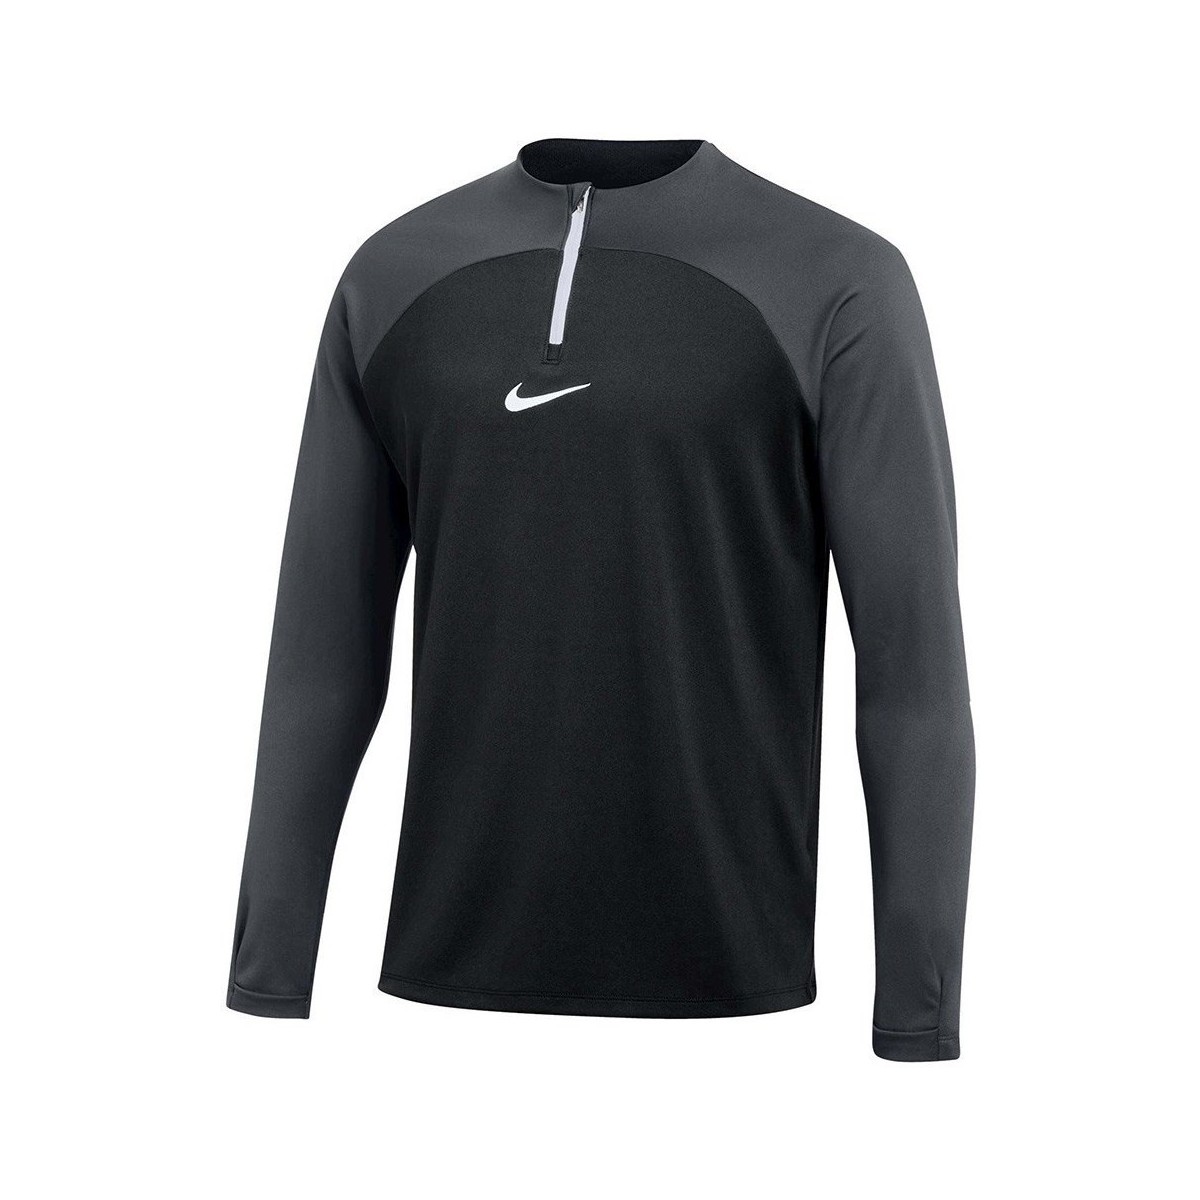 Vêtements Homme Sweats Nike Drifit Academy Noir, Gris